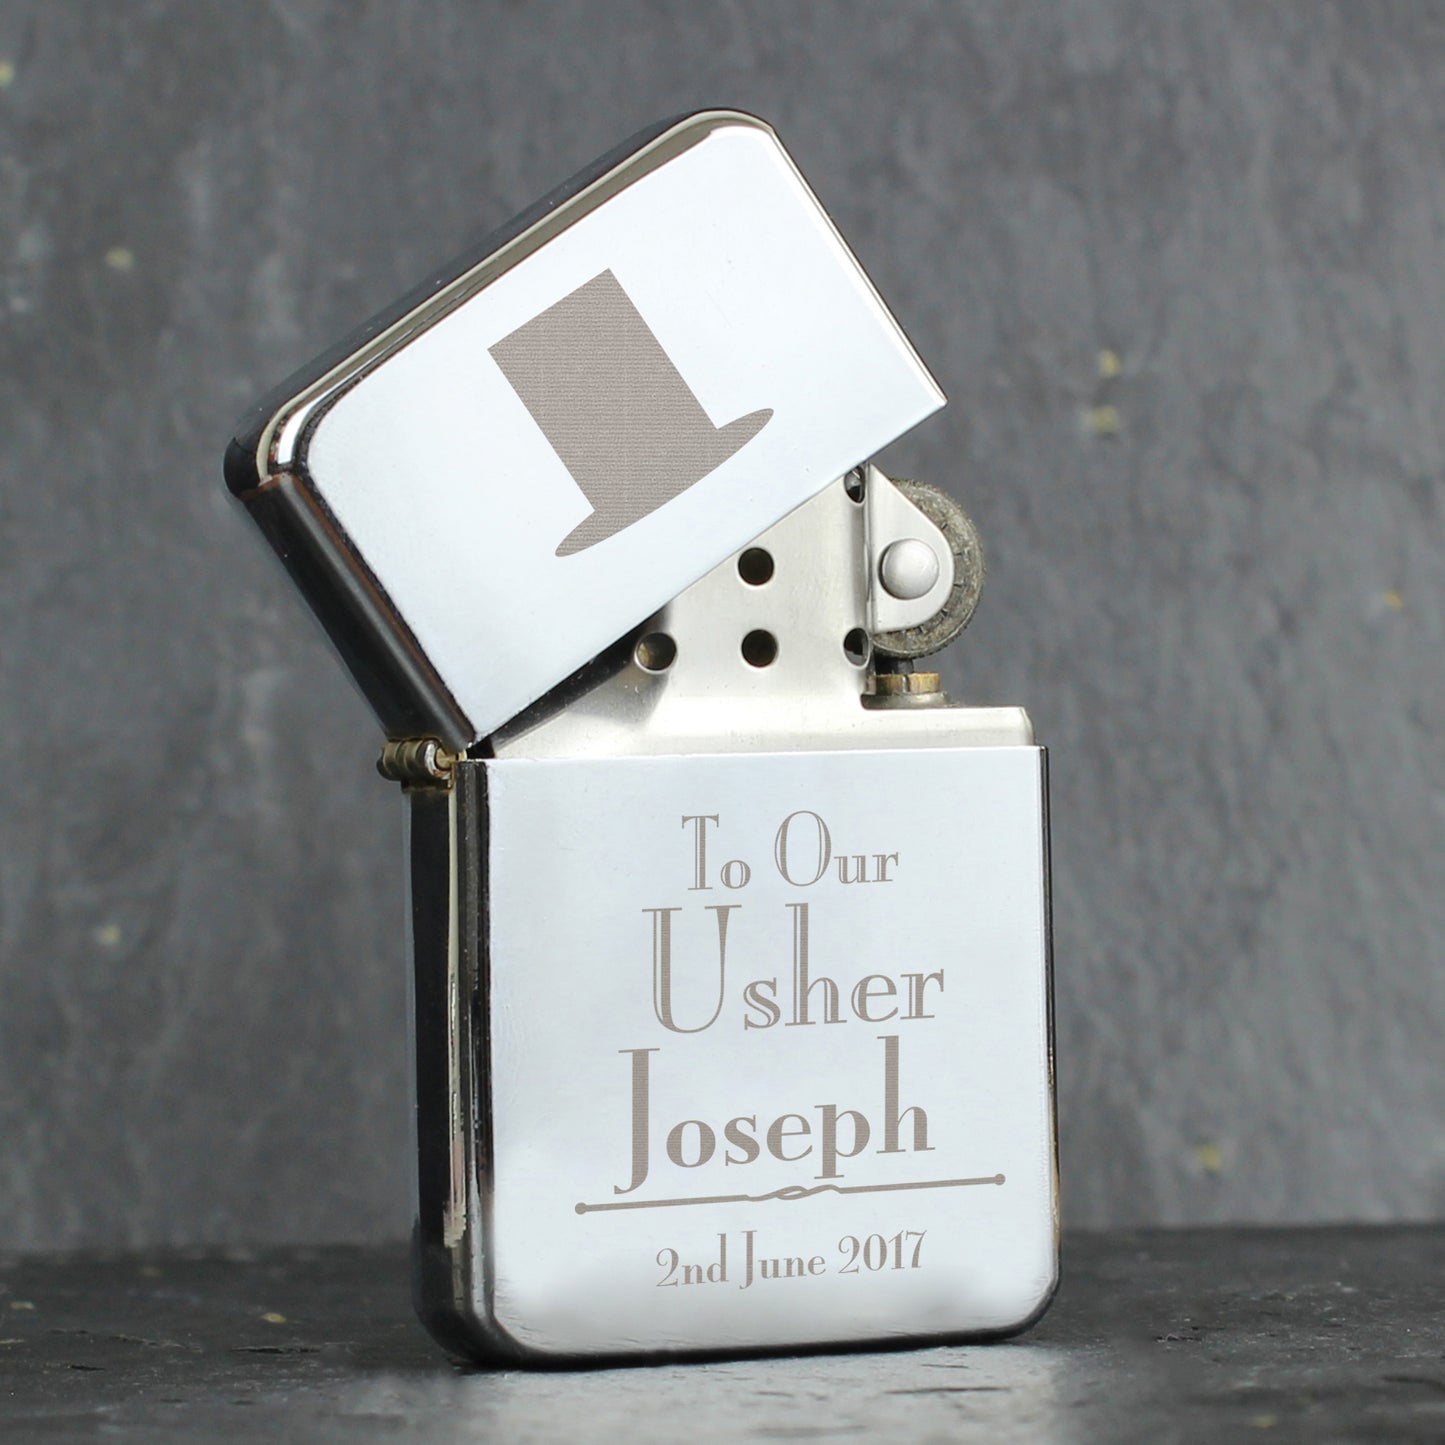 Personalised Decorative Wedding Usher Lighter - Personalise It!